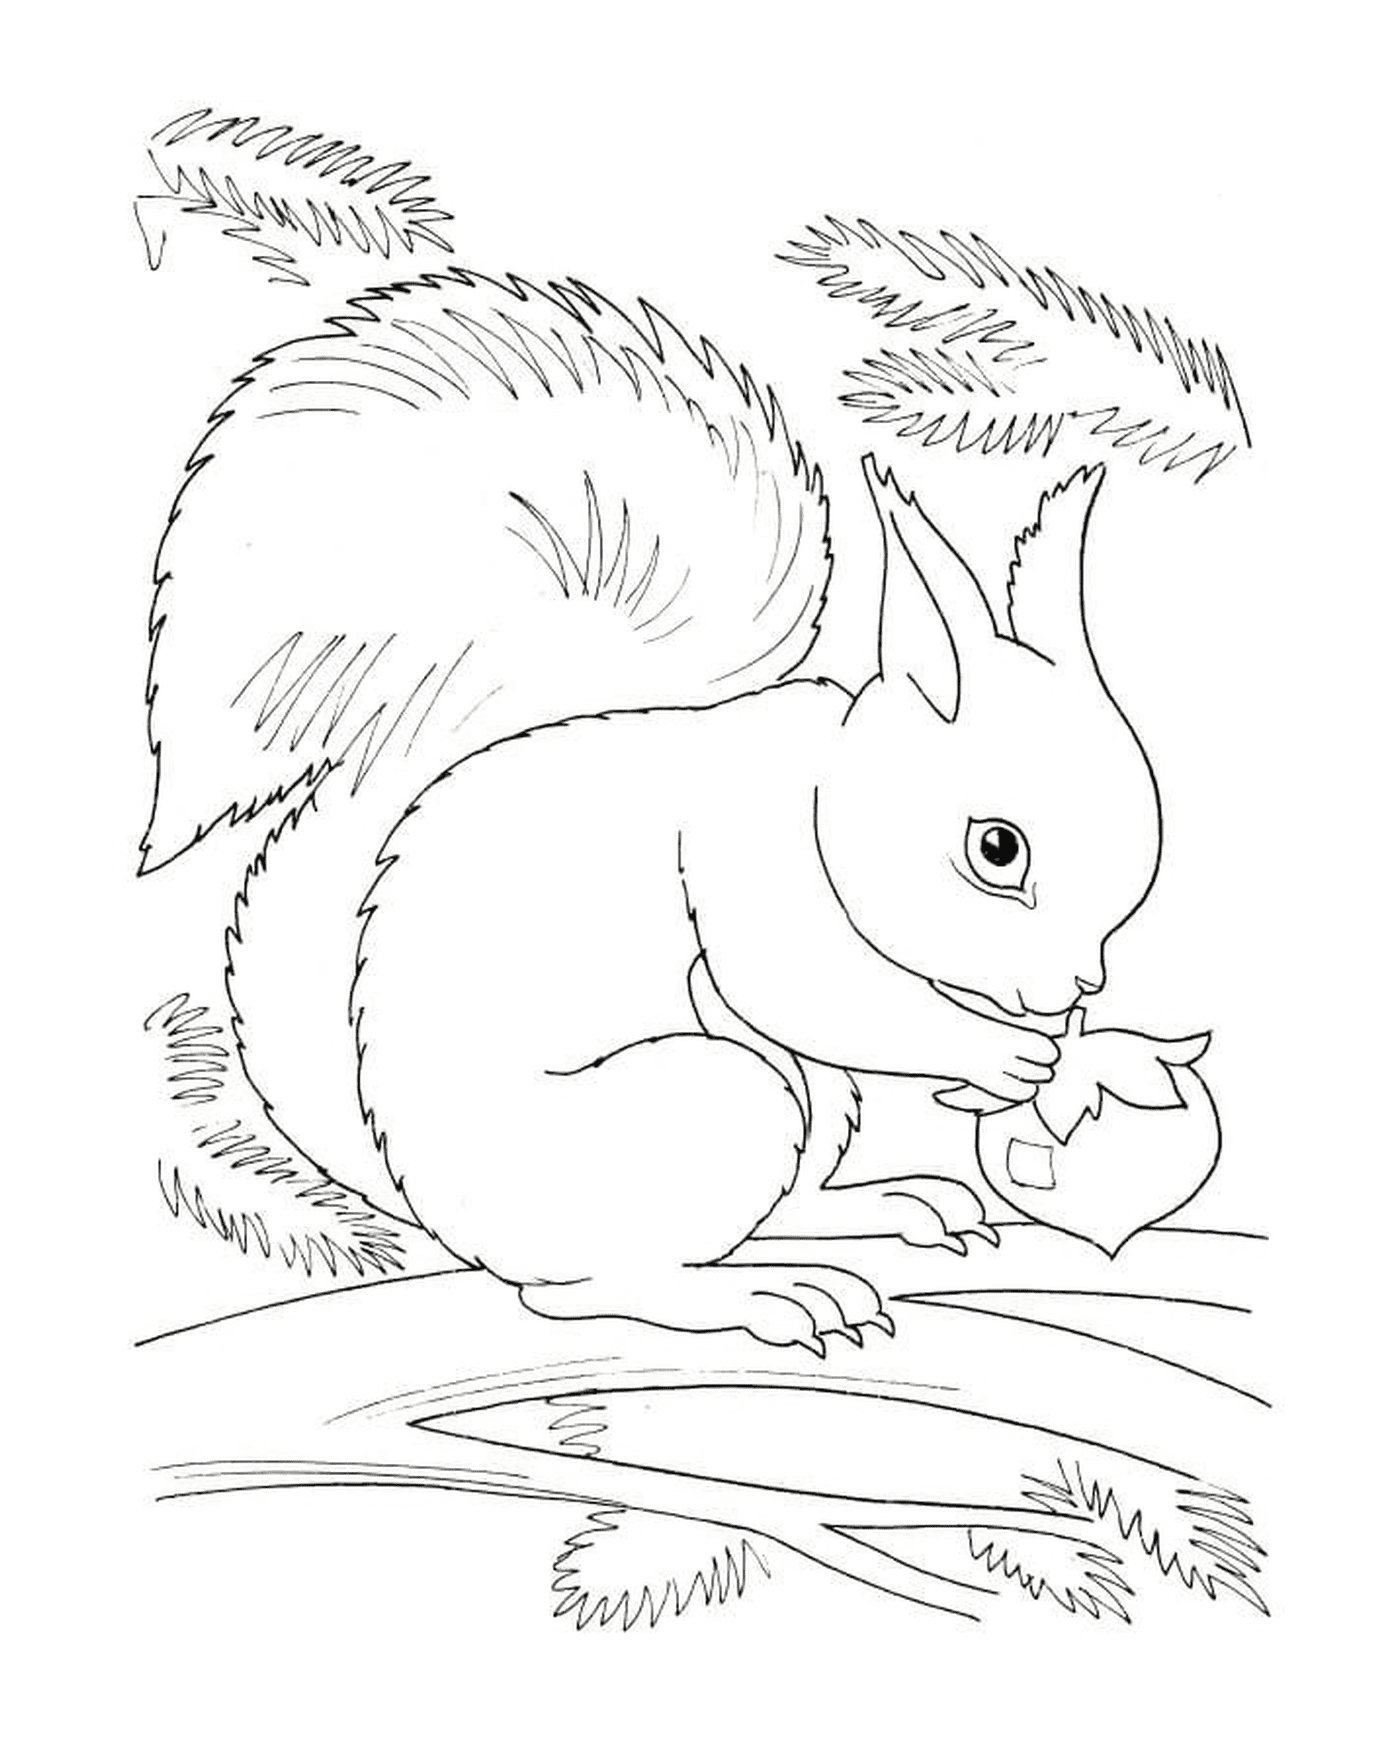  Uno scoiattolo che mangia una nocciola 